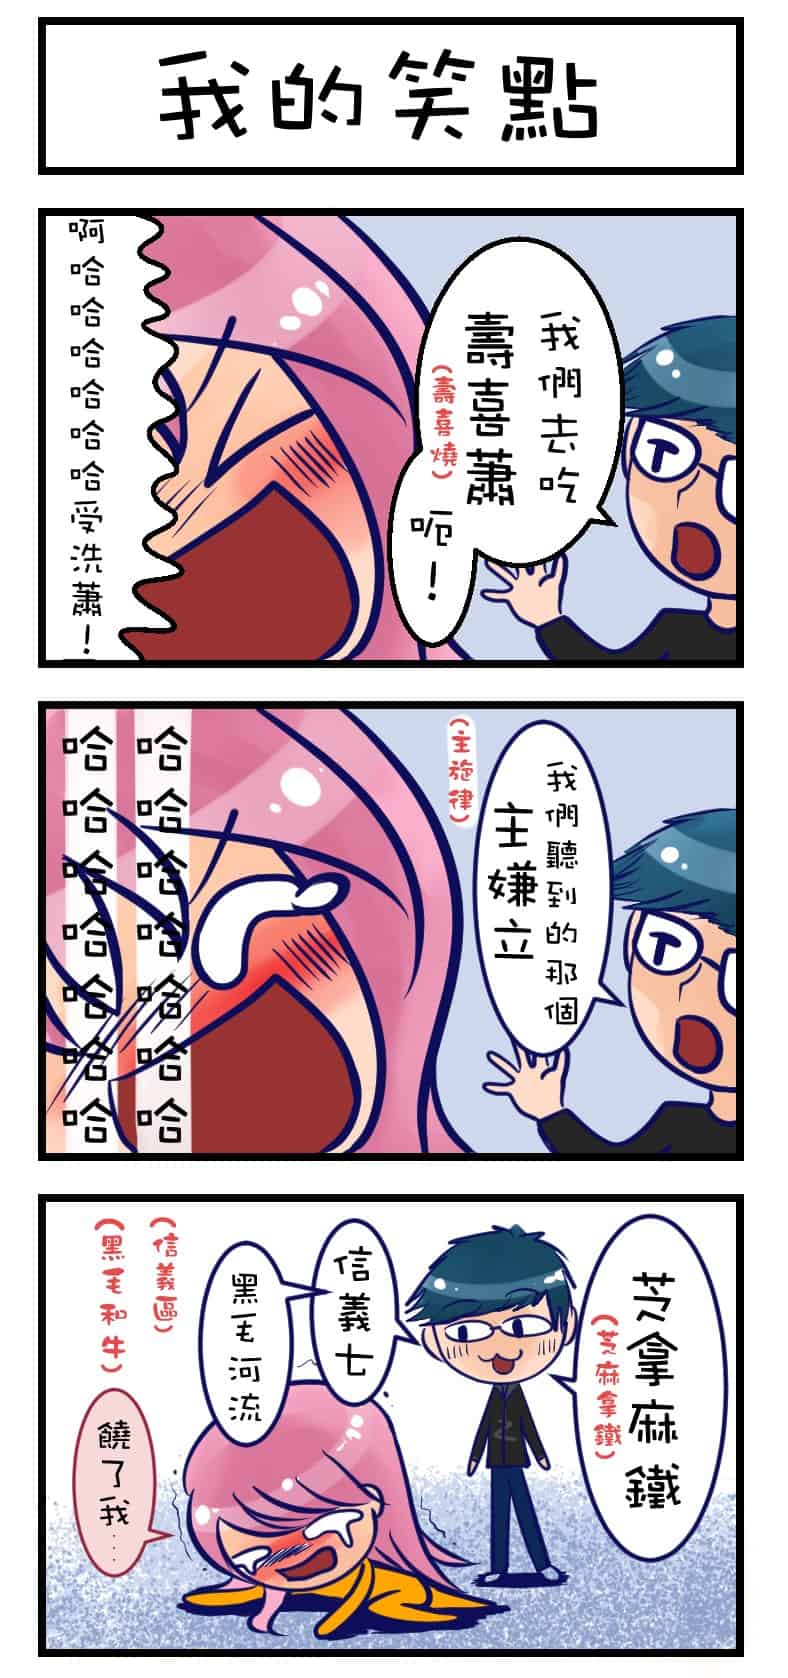 格漫 三格漫畫 插畫集錦 總整理PART1馬上看！